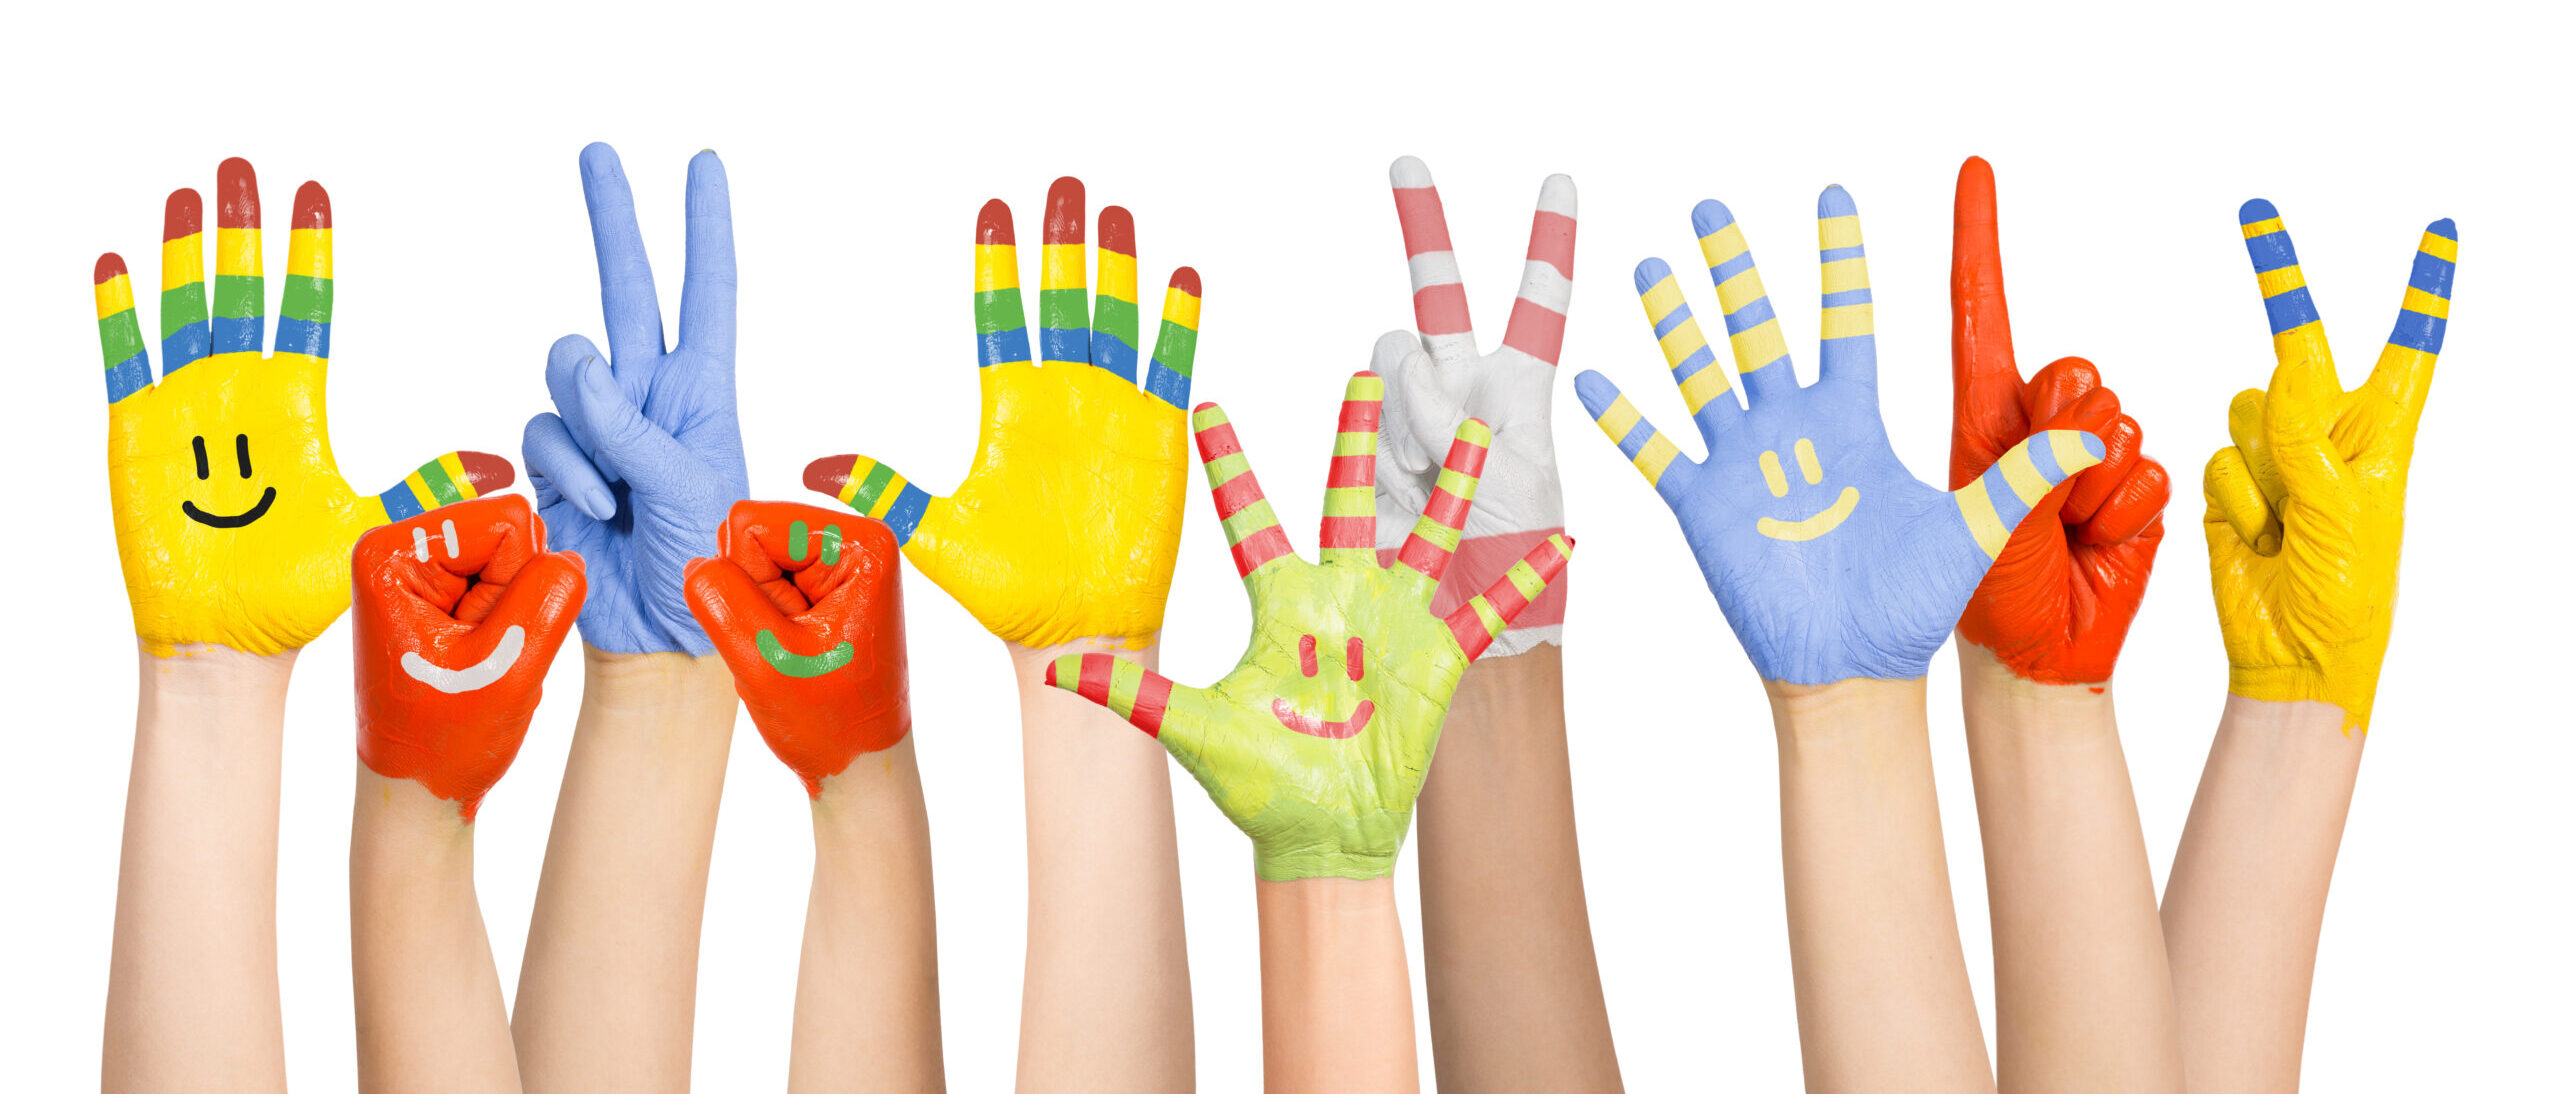 Painted Children's Hands